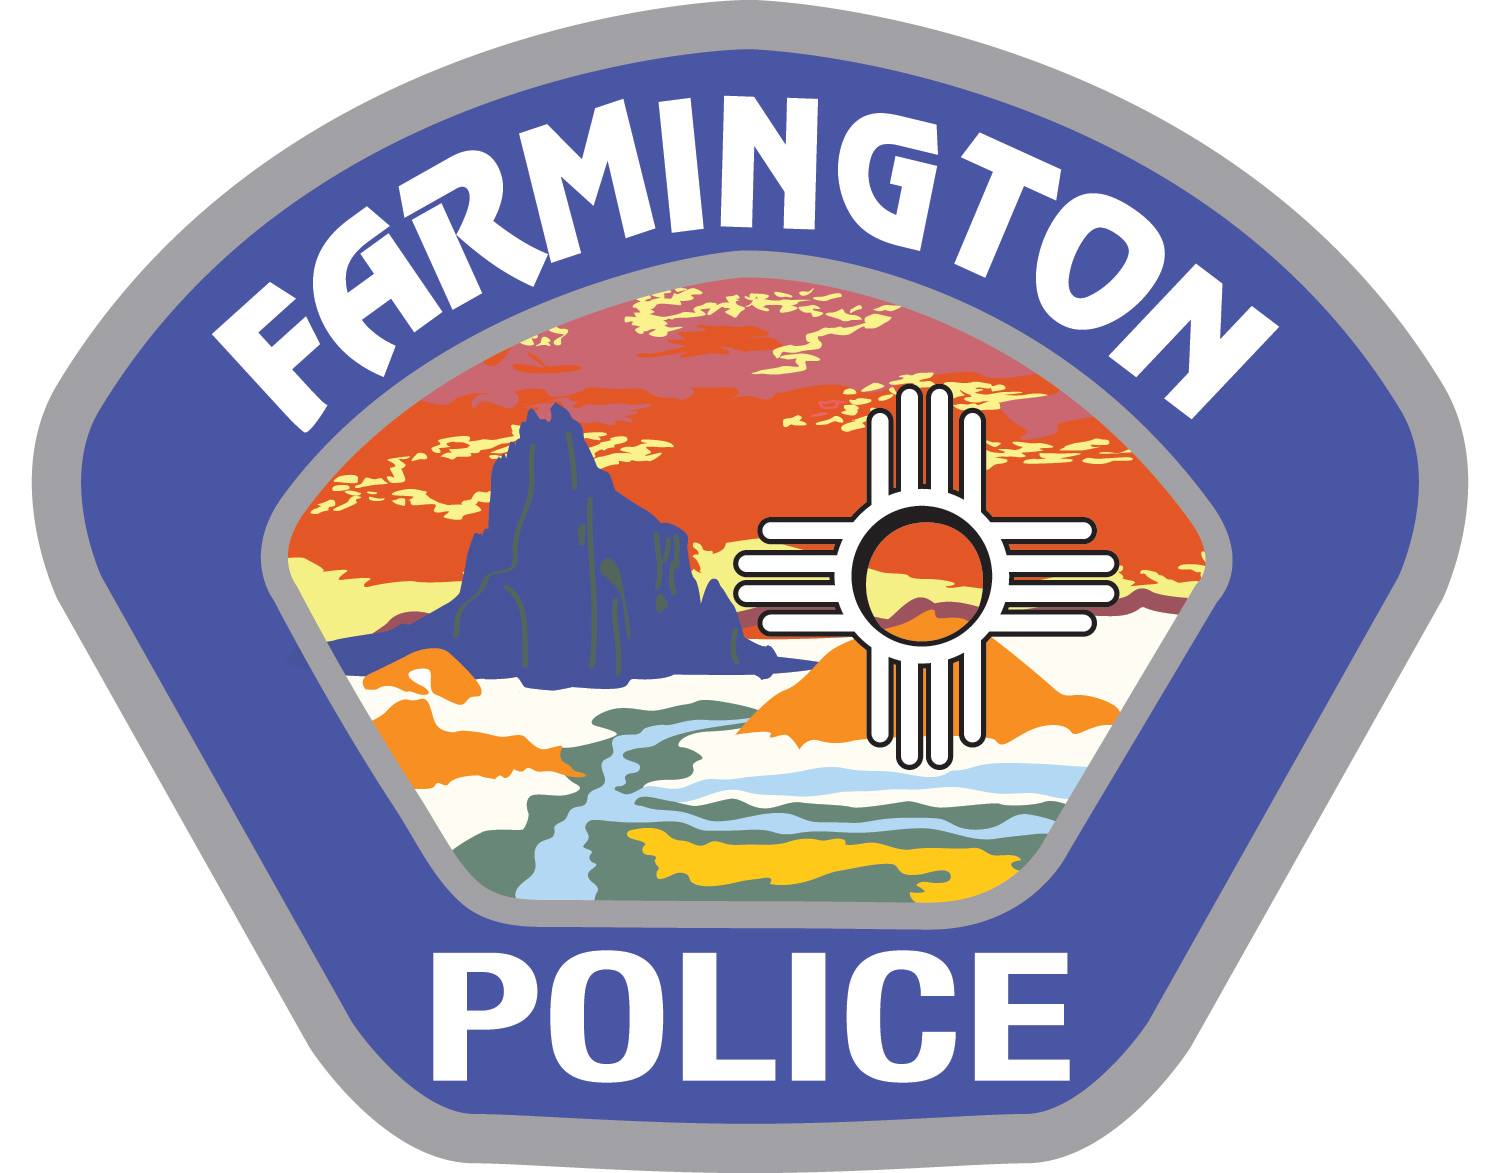 The Cop Shop - 071917 - Farmington Police Academy